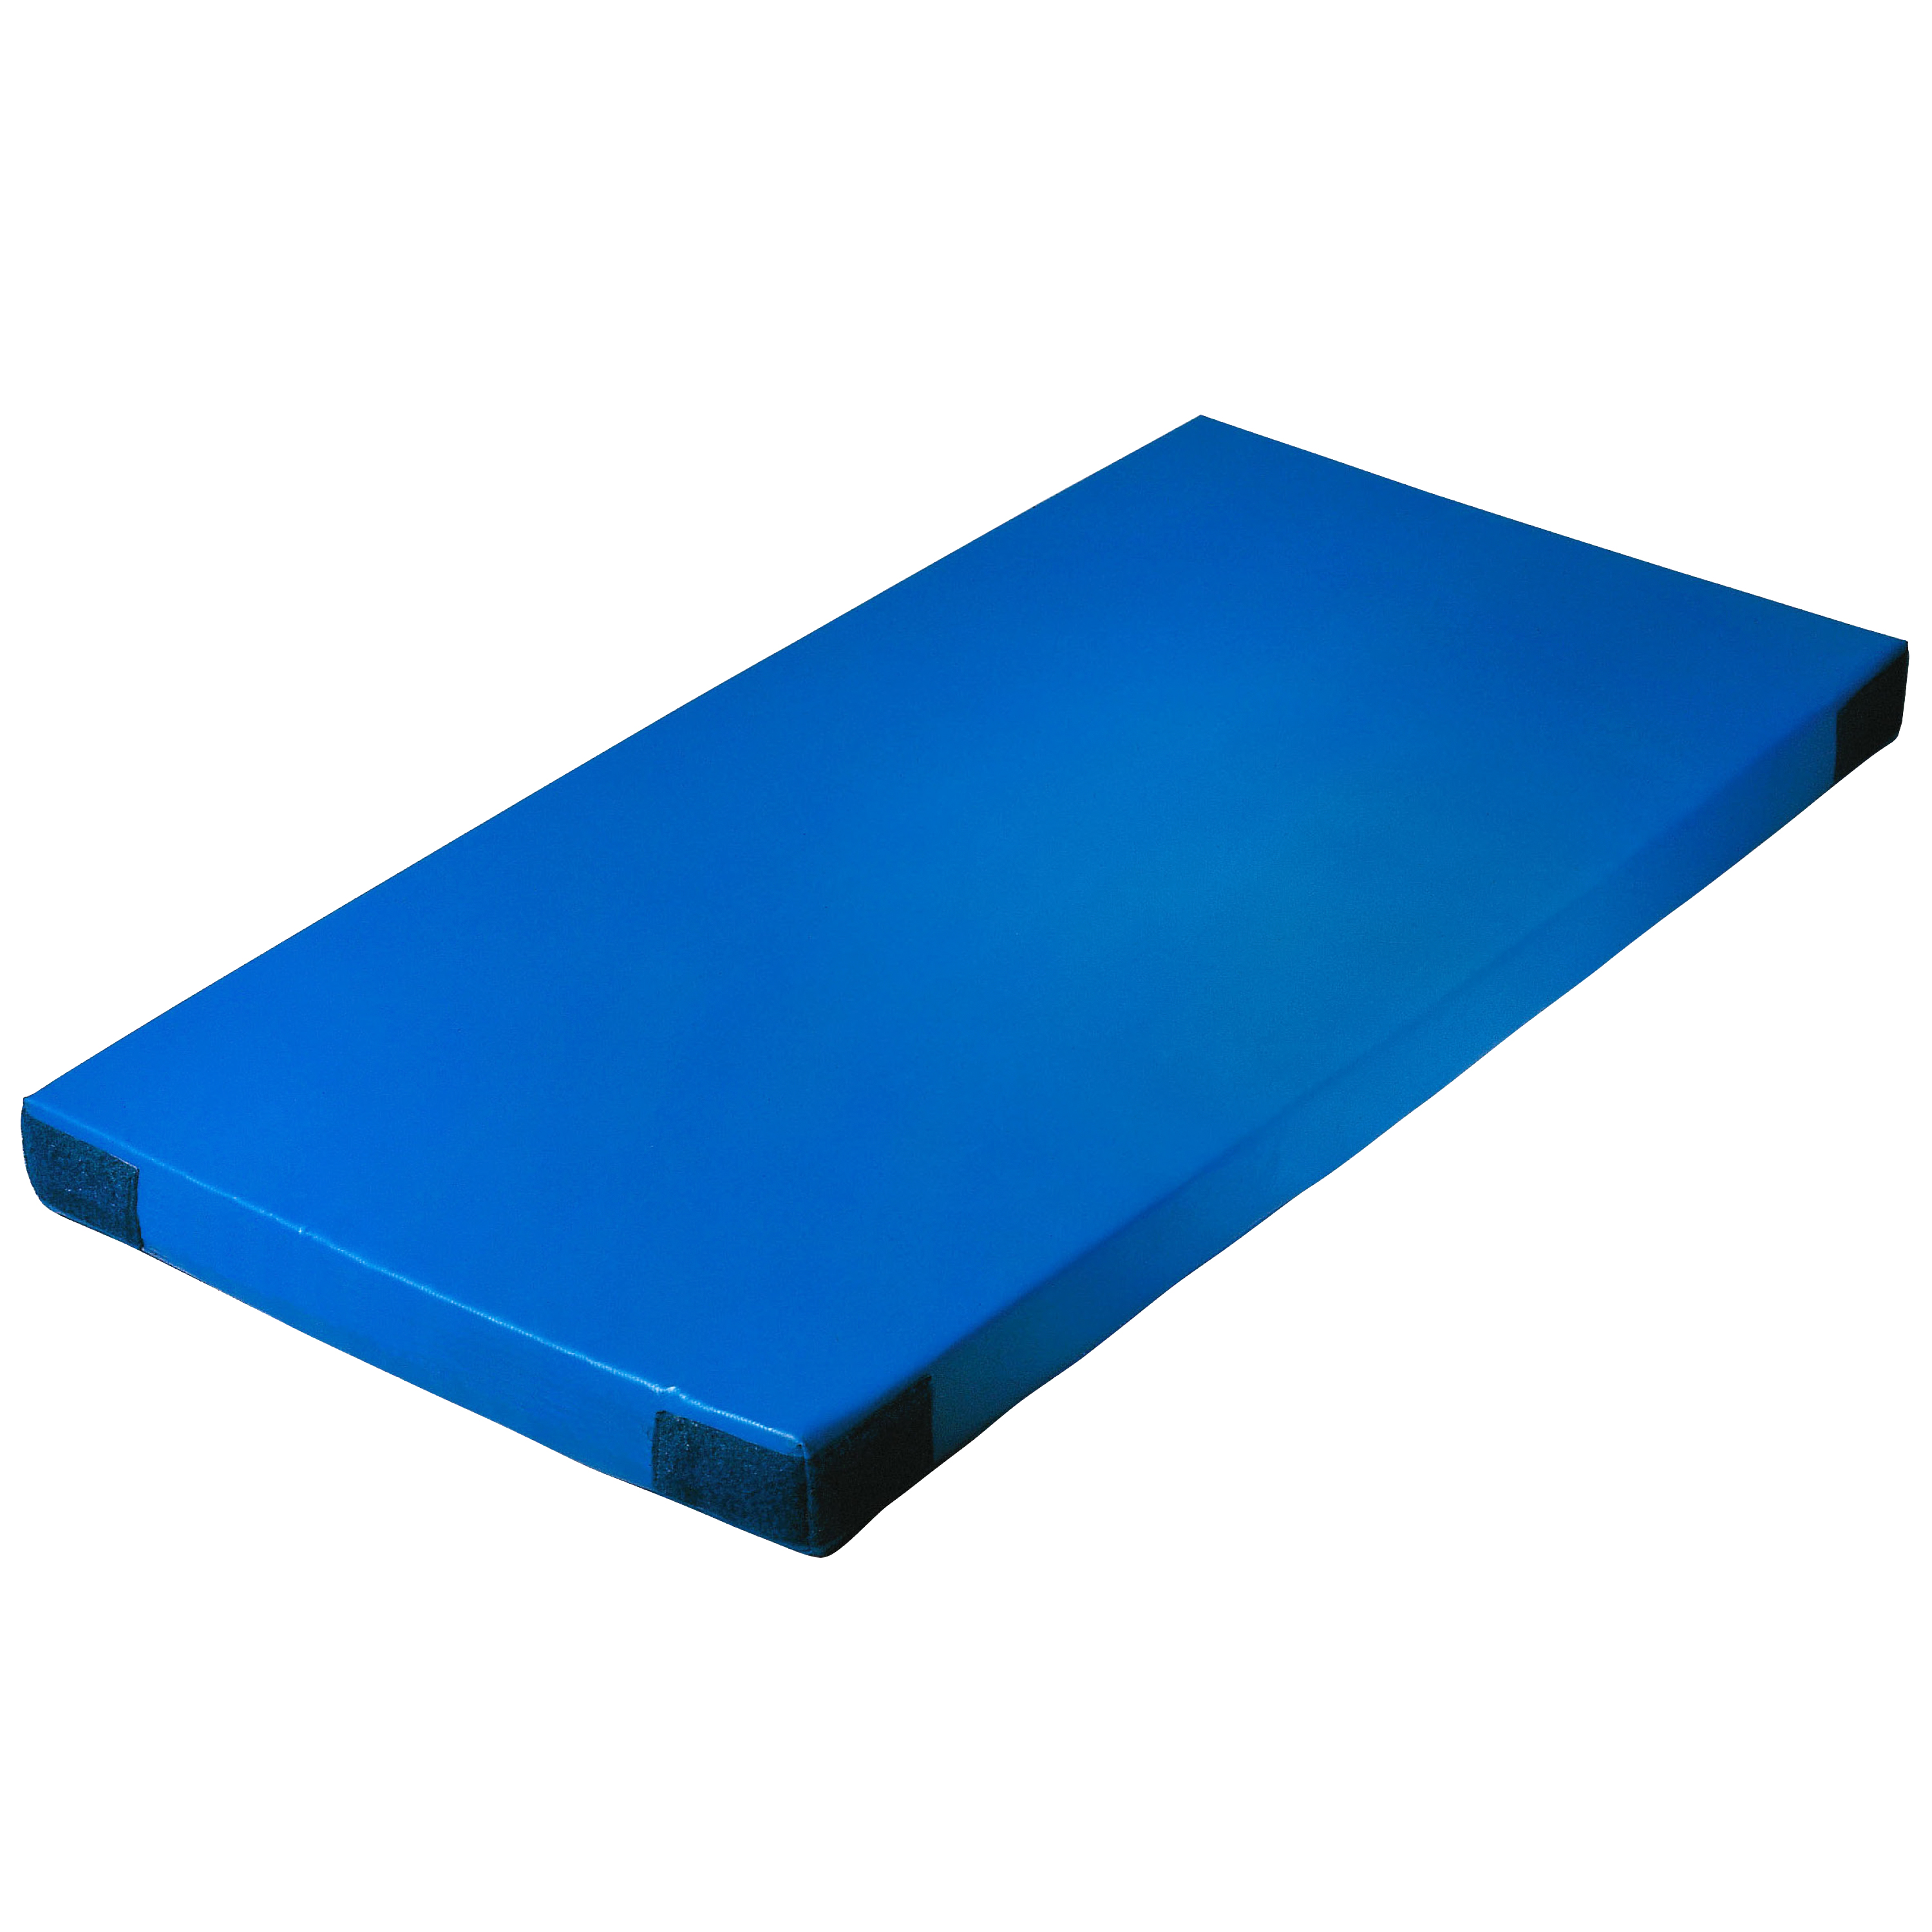 Super-Leichtturnmatte Klettecken 200 x 125 x 8 cm, blau